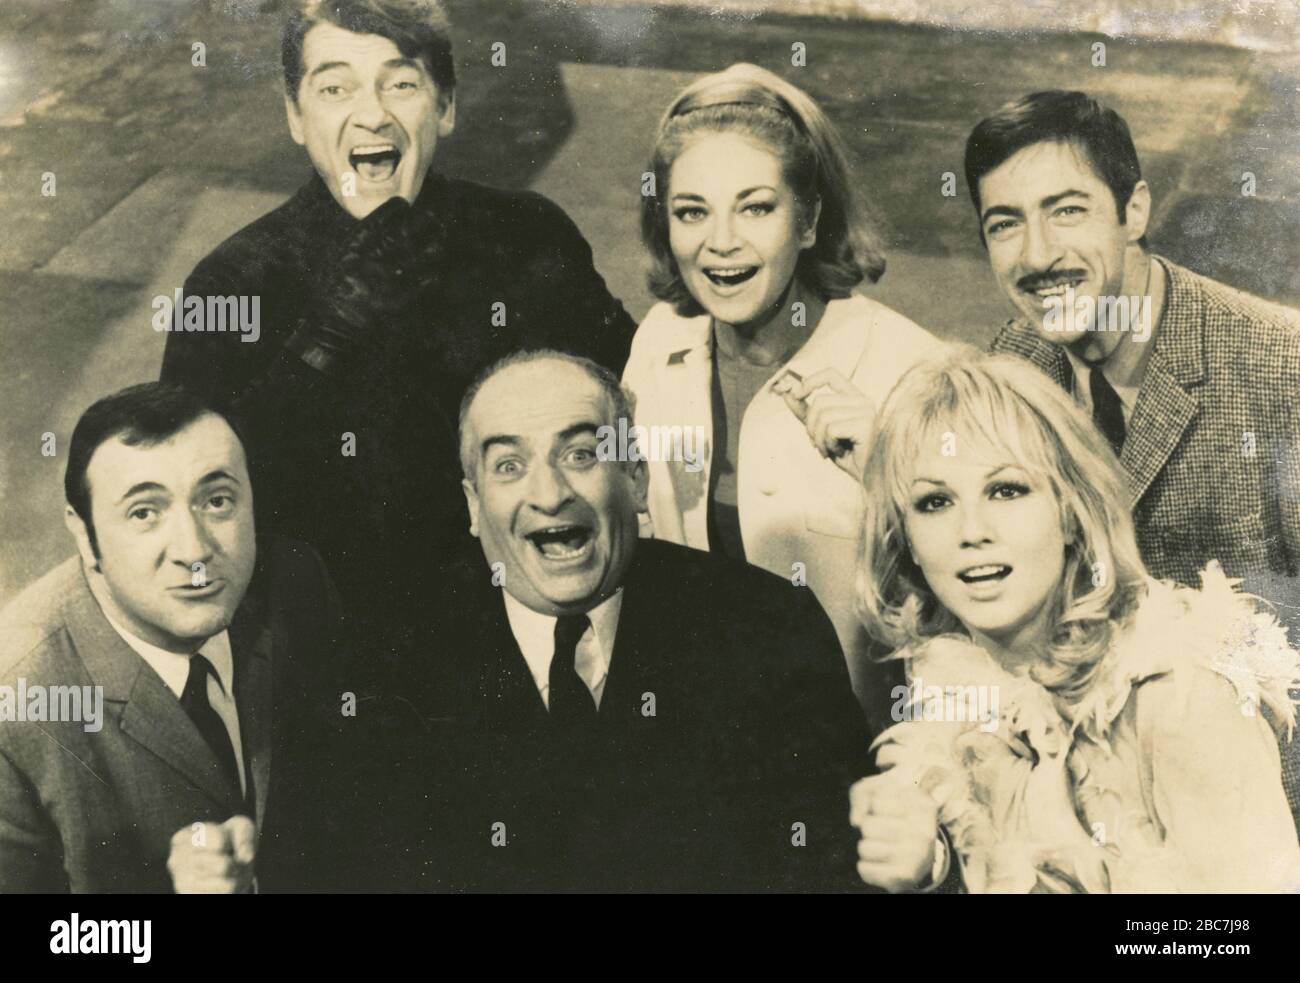 Les acteurs français Louis de Funès, Jean Marais, Mylène Demongeot et Mino Doro dans le film Fantomas vs. Scotland Yard, France 1967 Banque D'Images